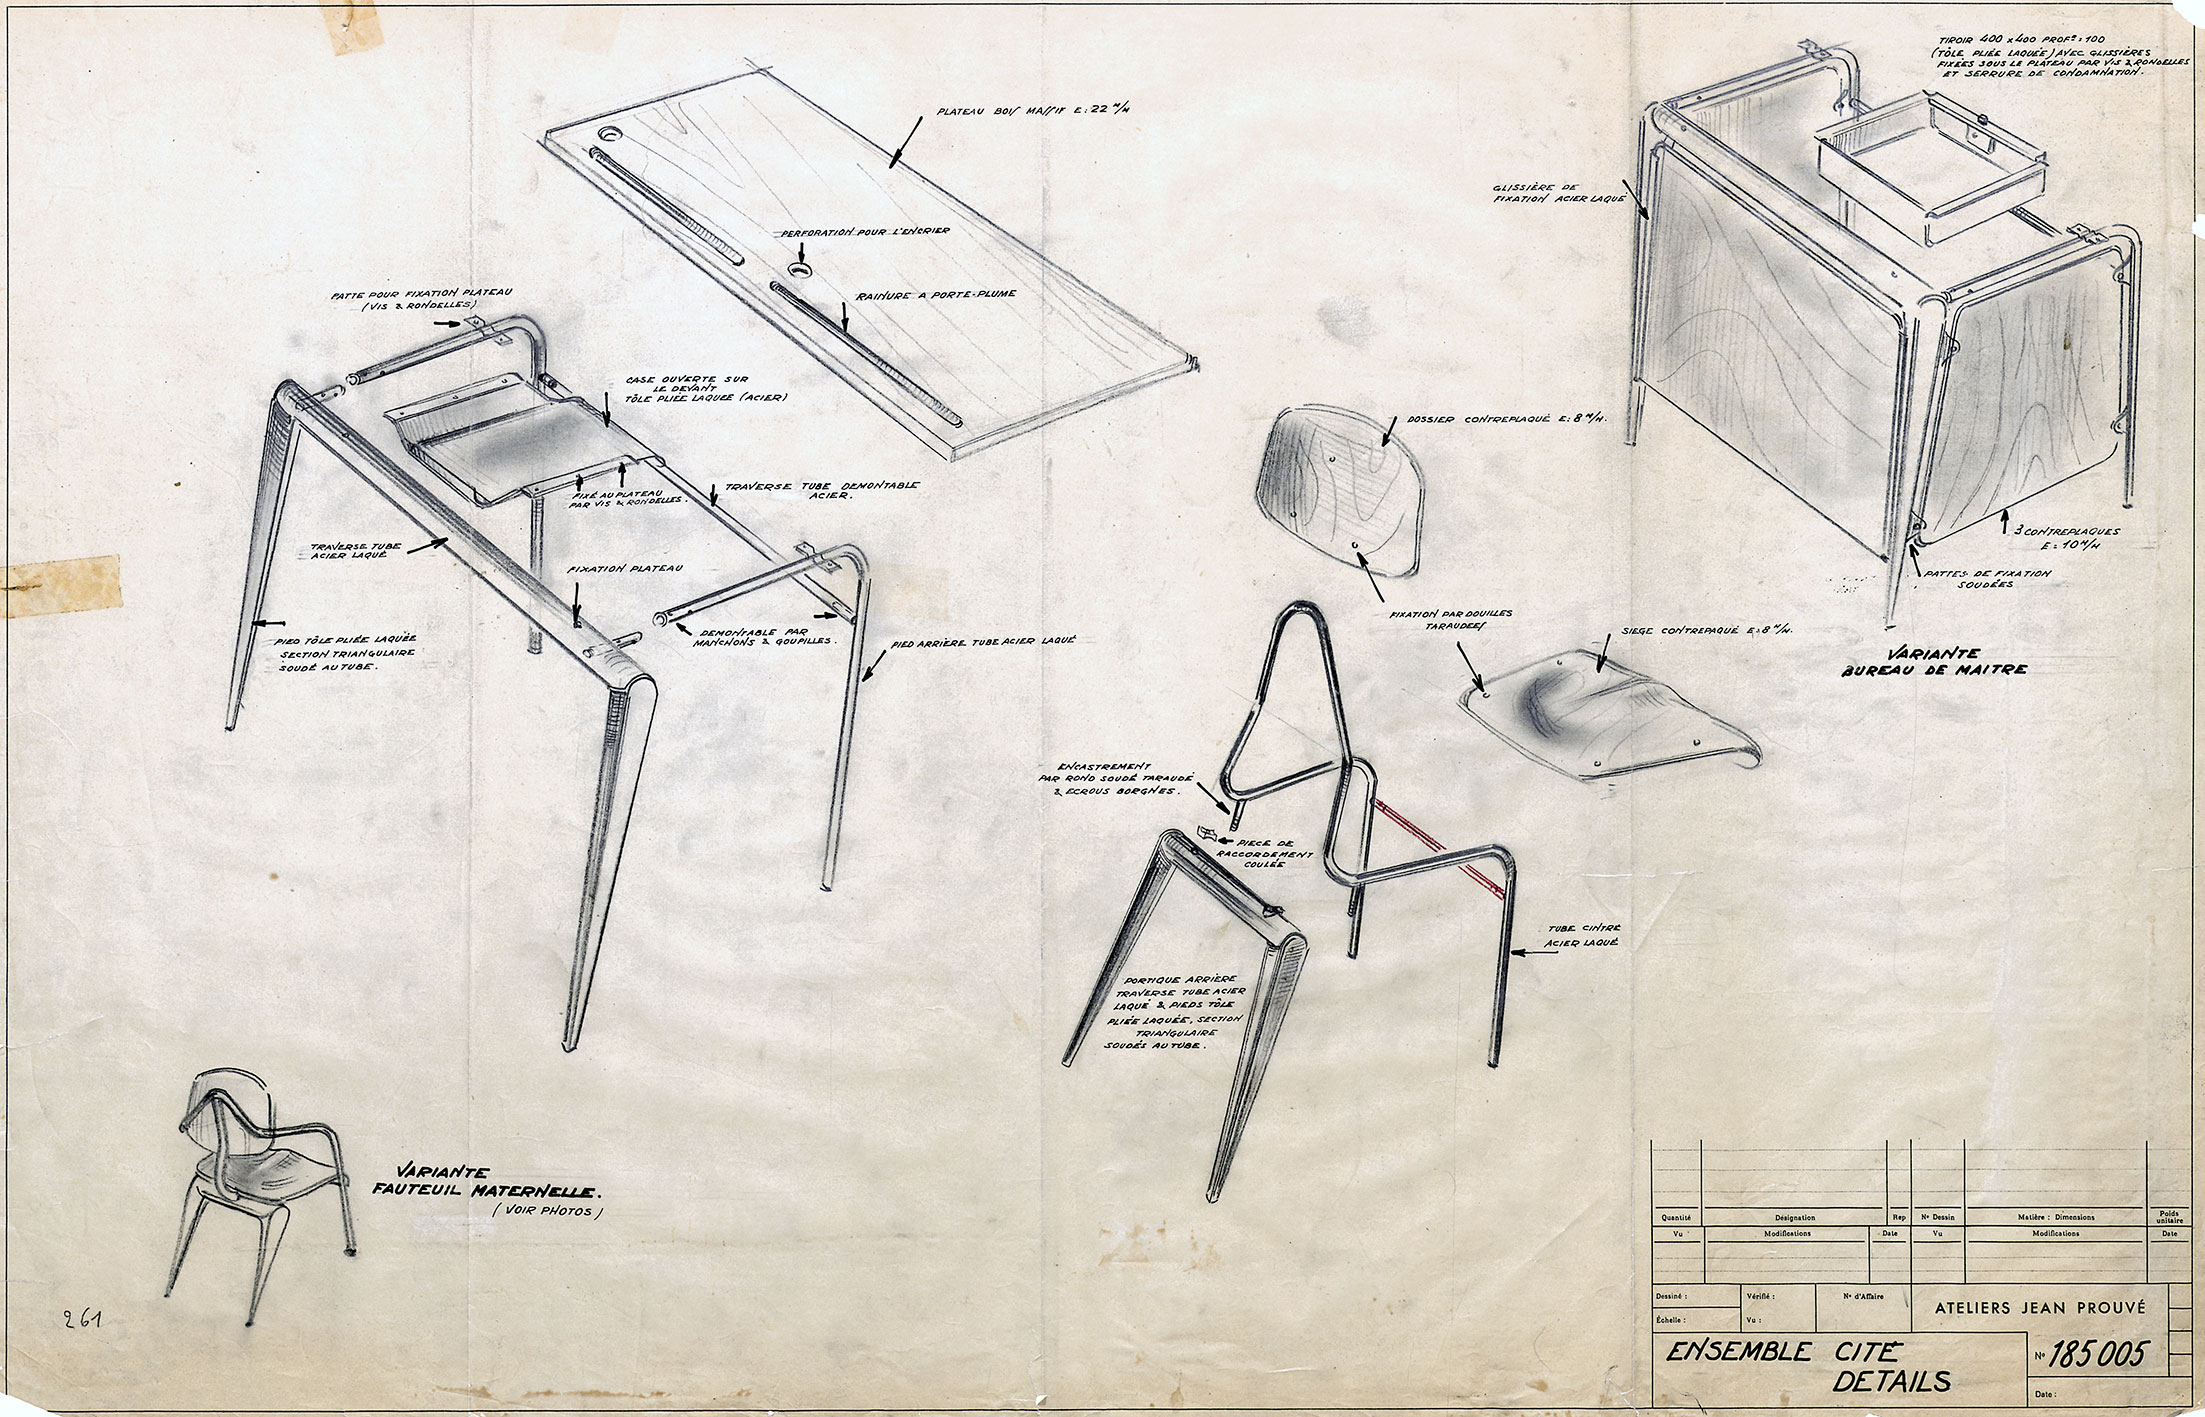 “Ensemble Cité. Details”. Ateliers Jean Prouvé drawing no. 185.005, March 1952.